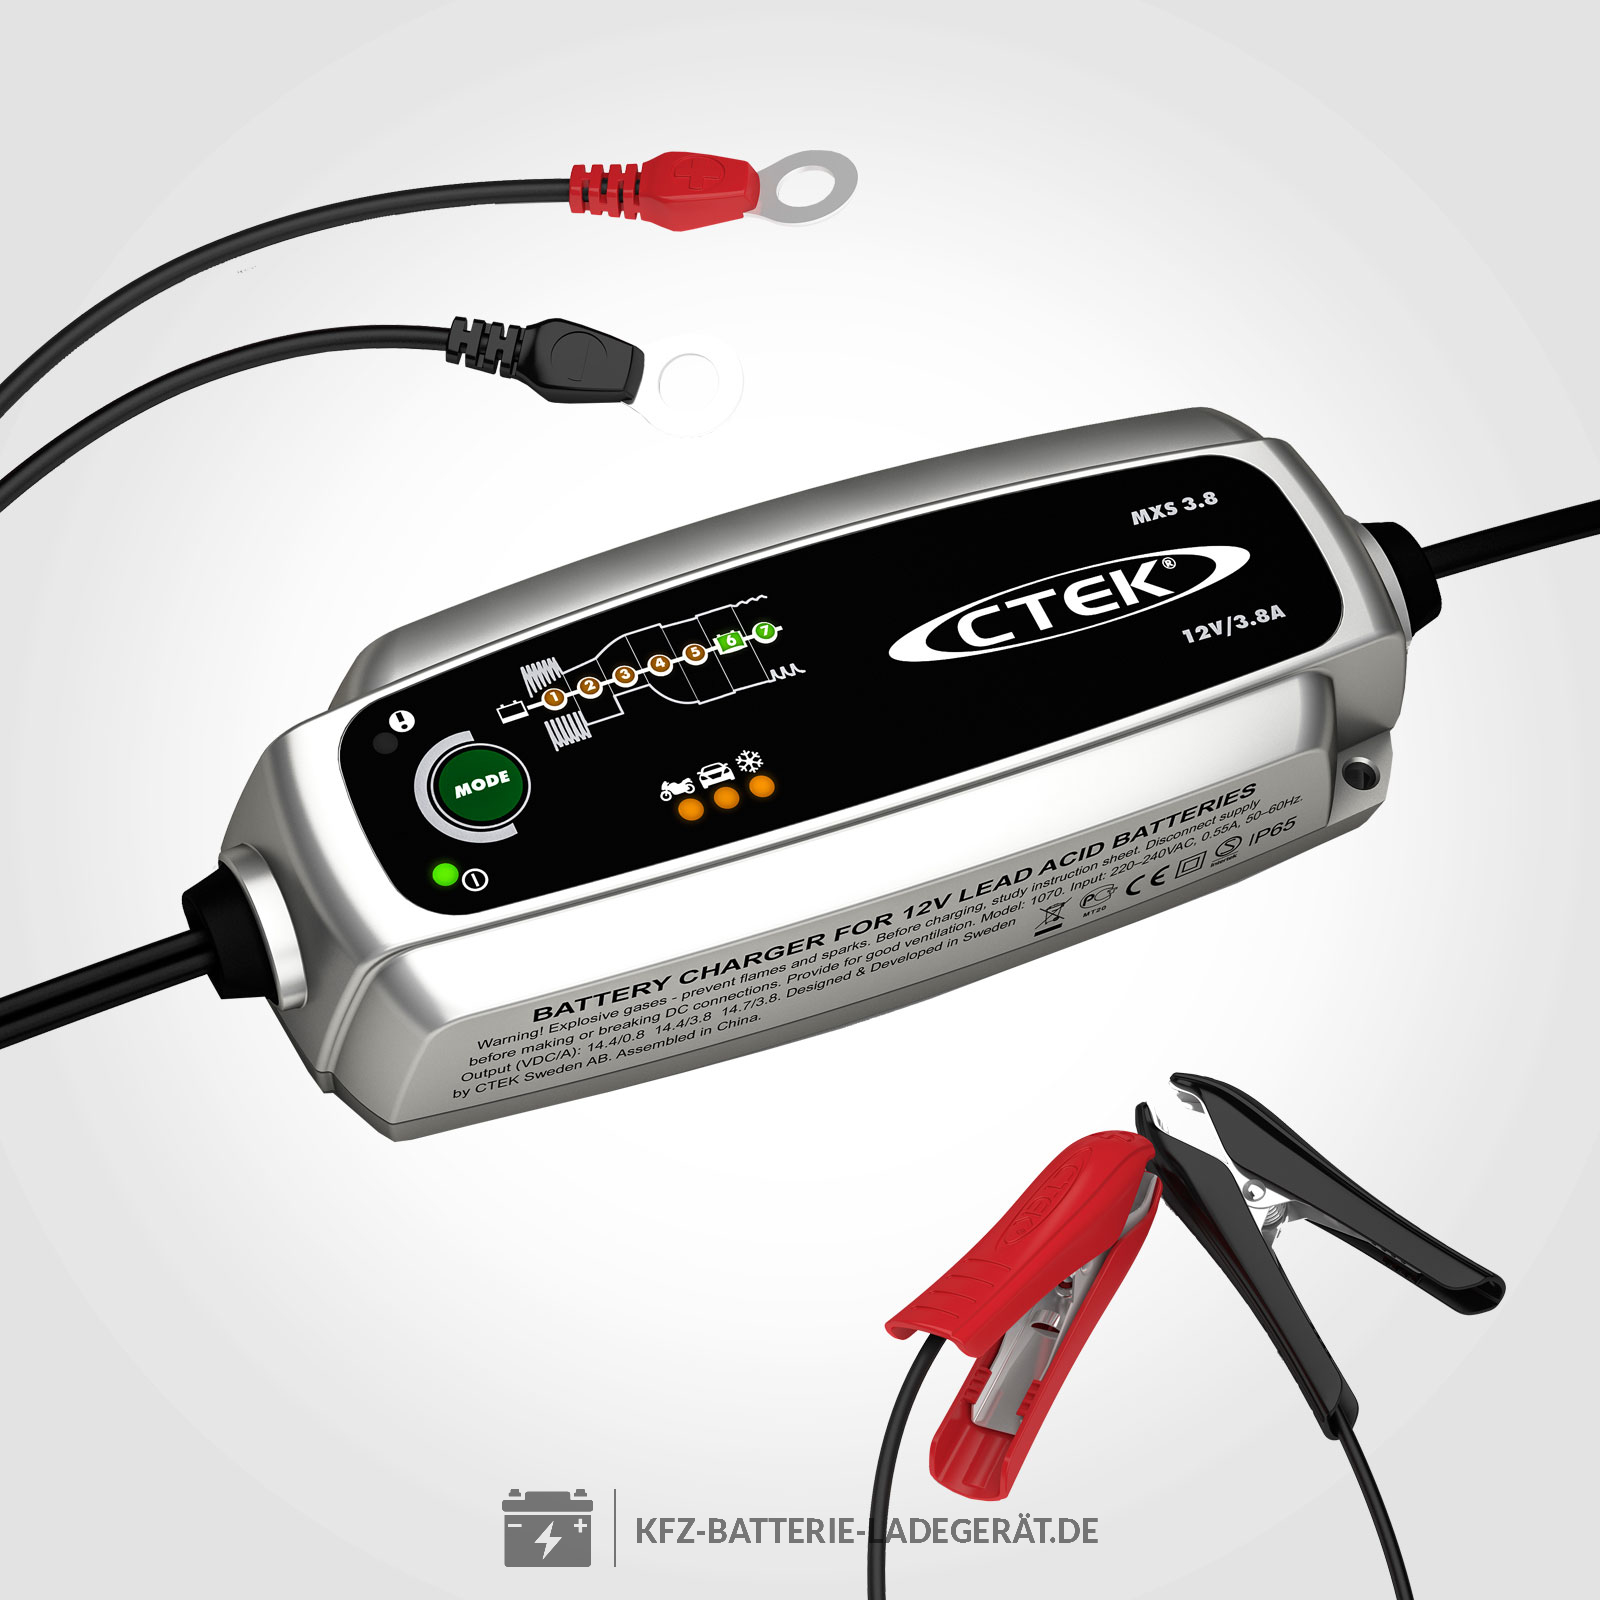 CTEK MXS 3.8 Ladegerät für 12V Batterien - CTEK Batterie Ladegeräte